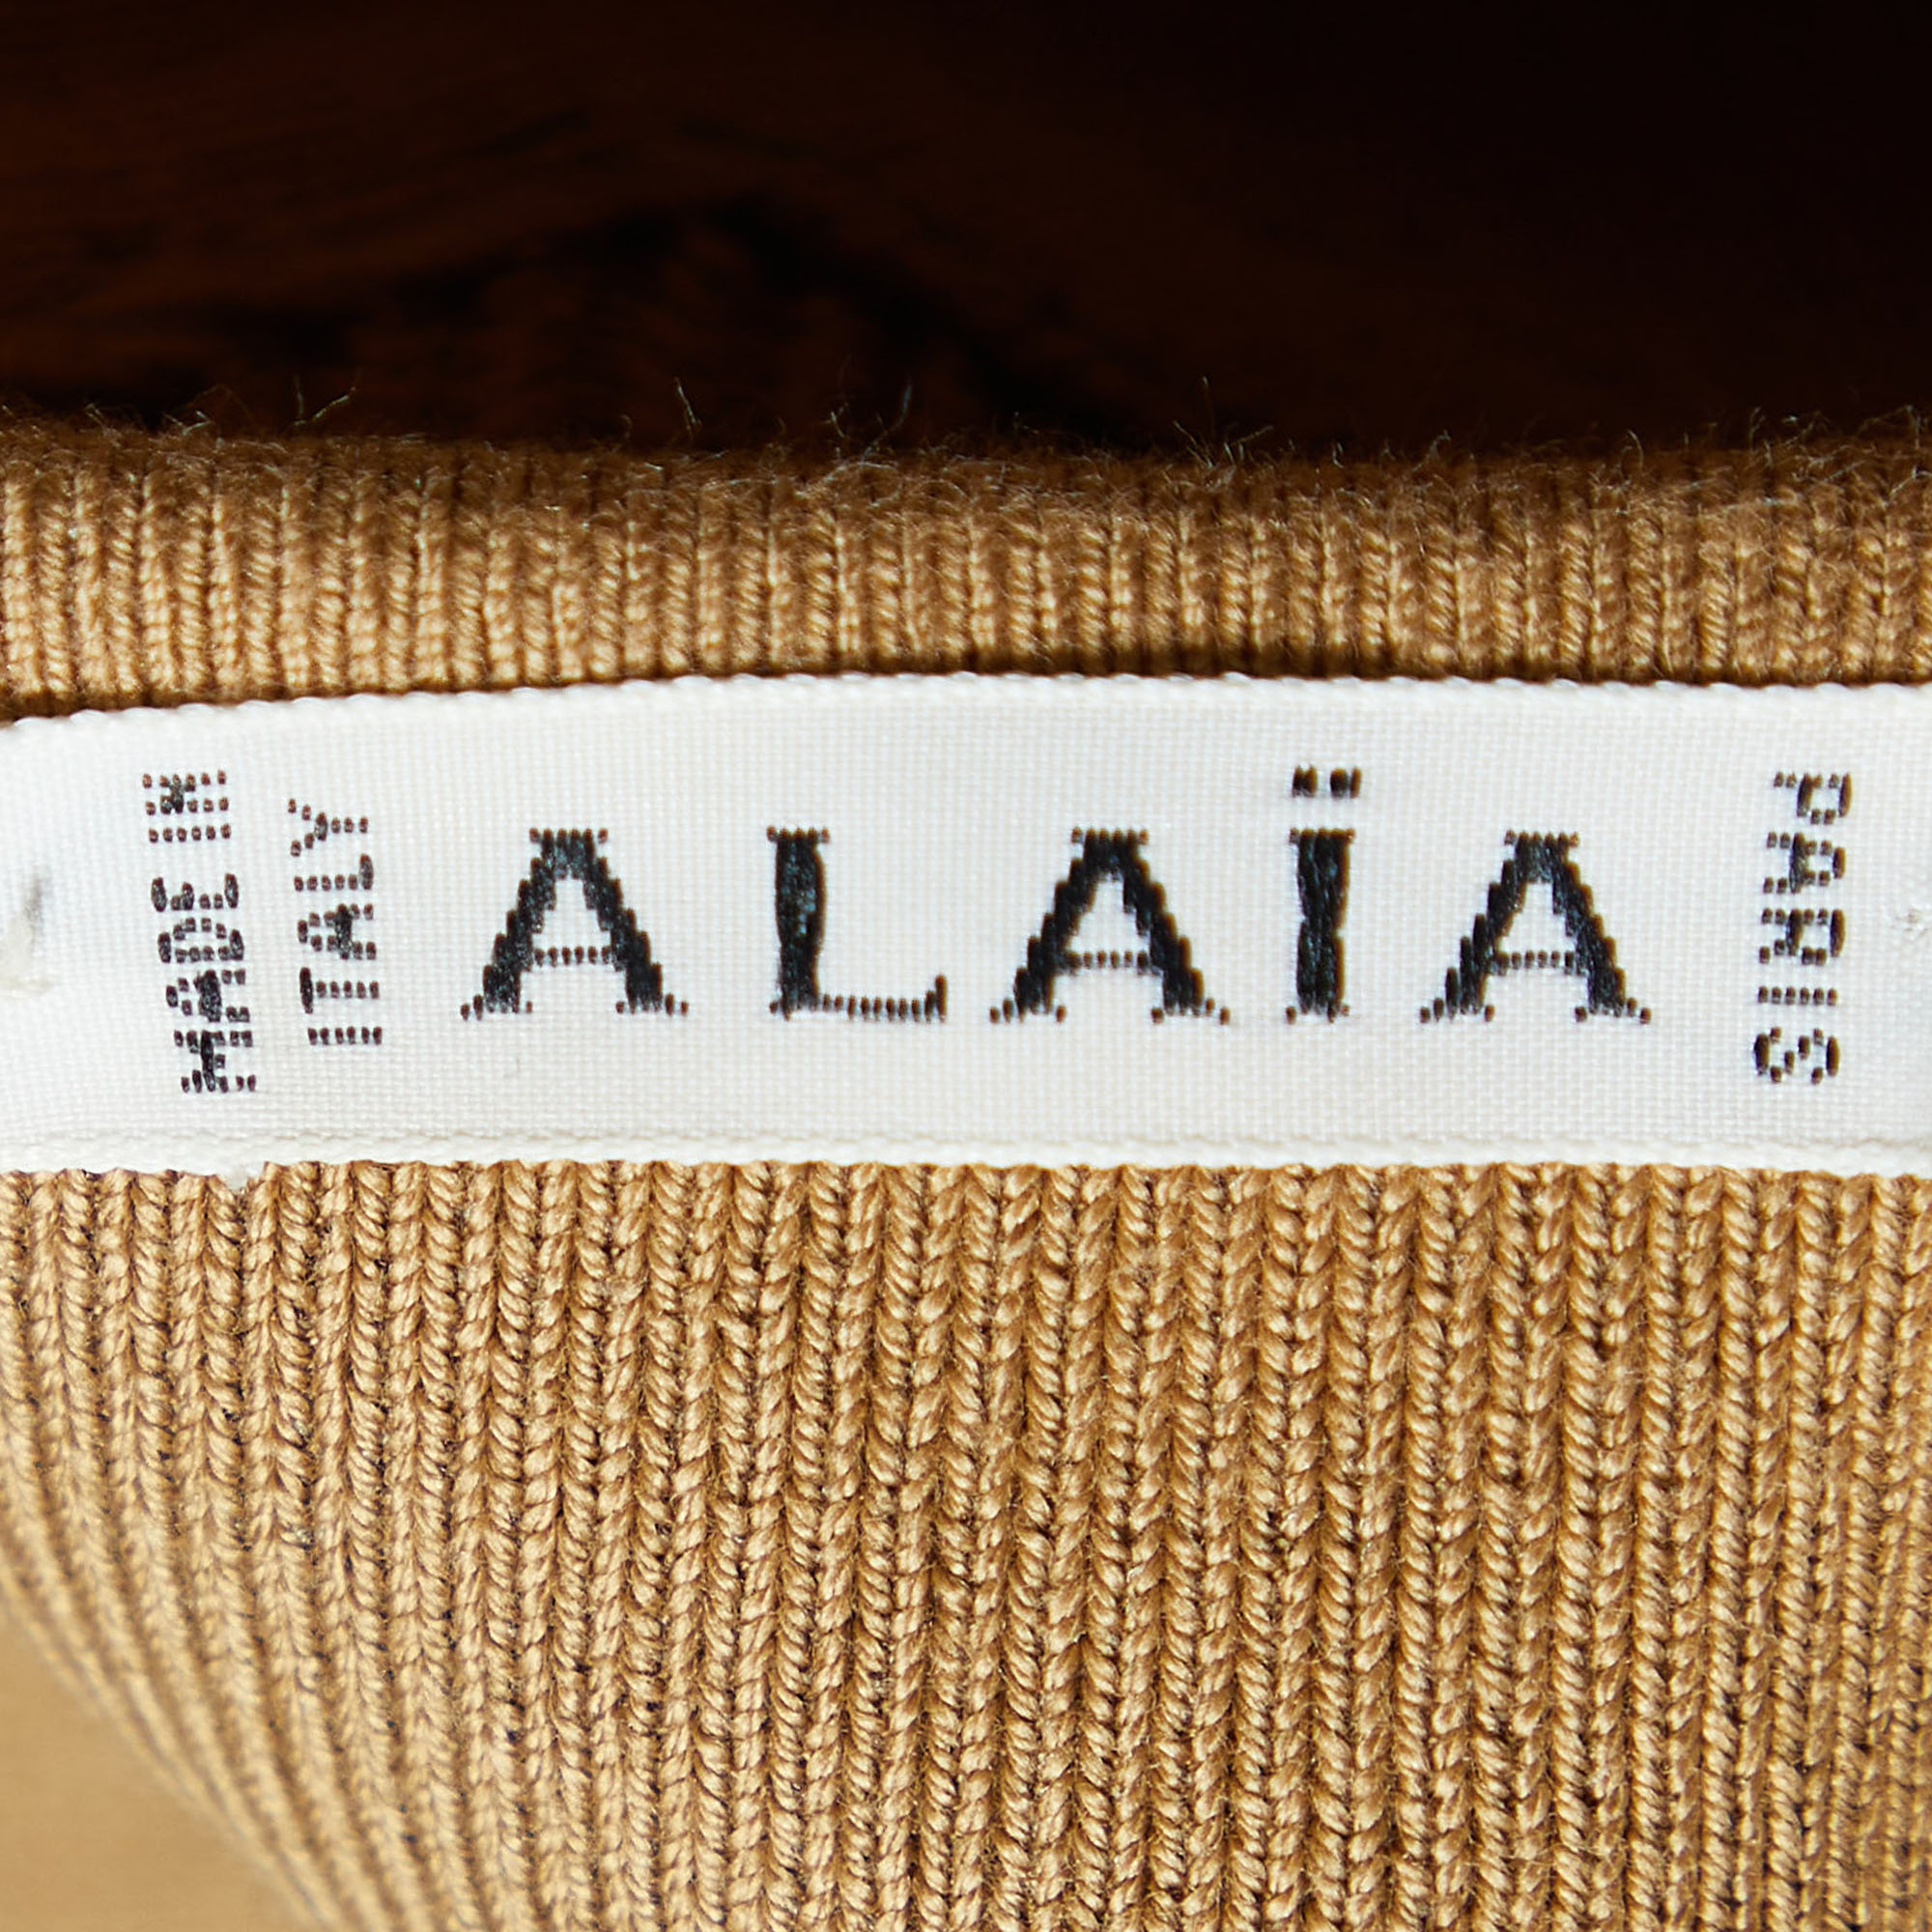 Alaia Brown Cotton Knit Capri Pants M